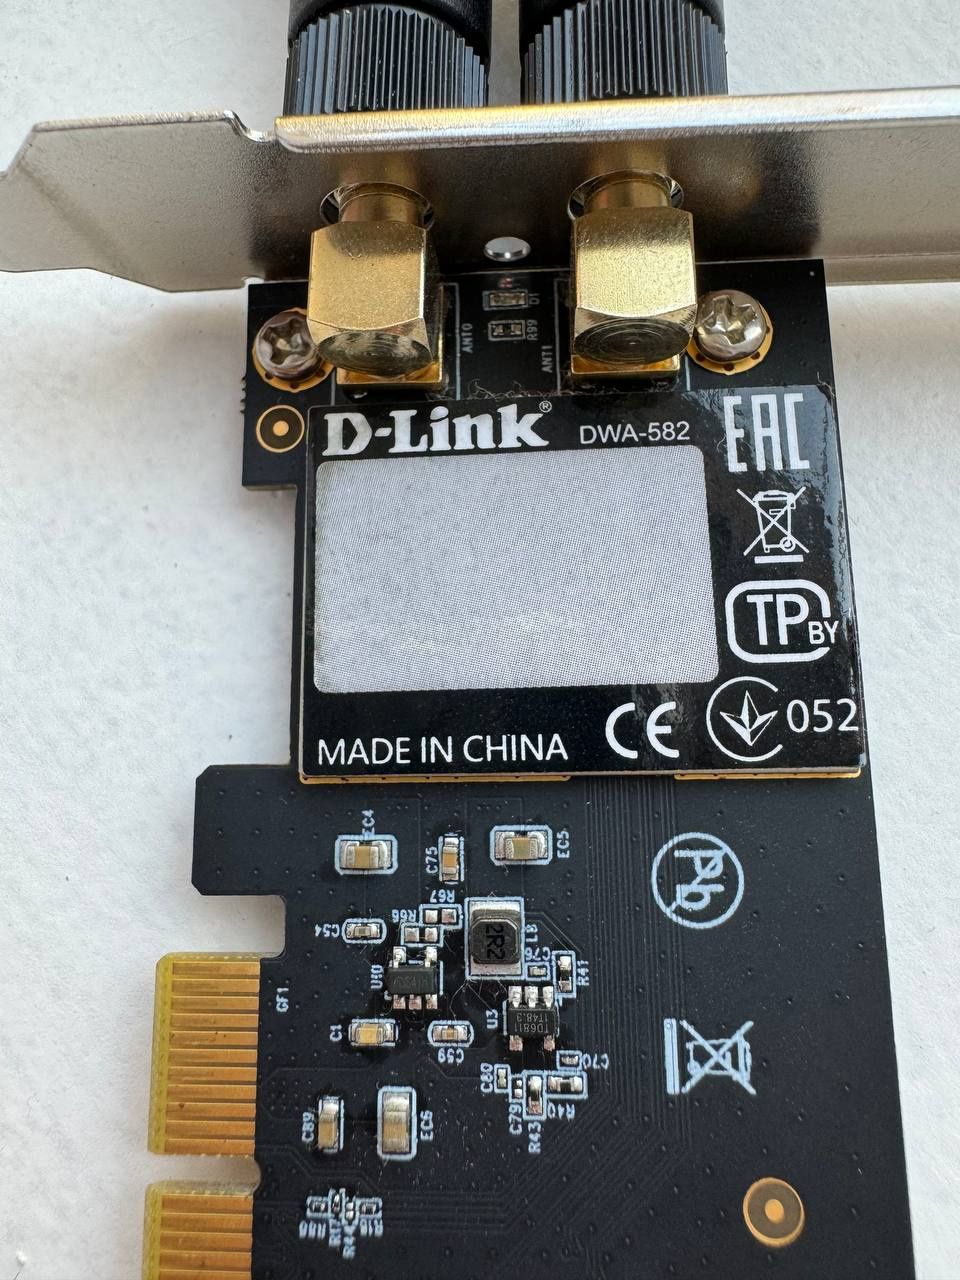 WiFi-адаптер D-Link DWA-582 rev B, AC1200, PCI-express (DWA-582)